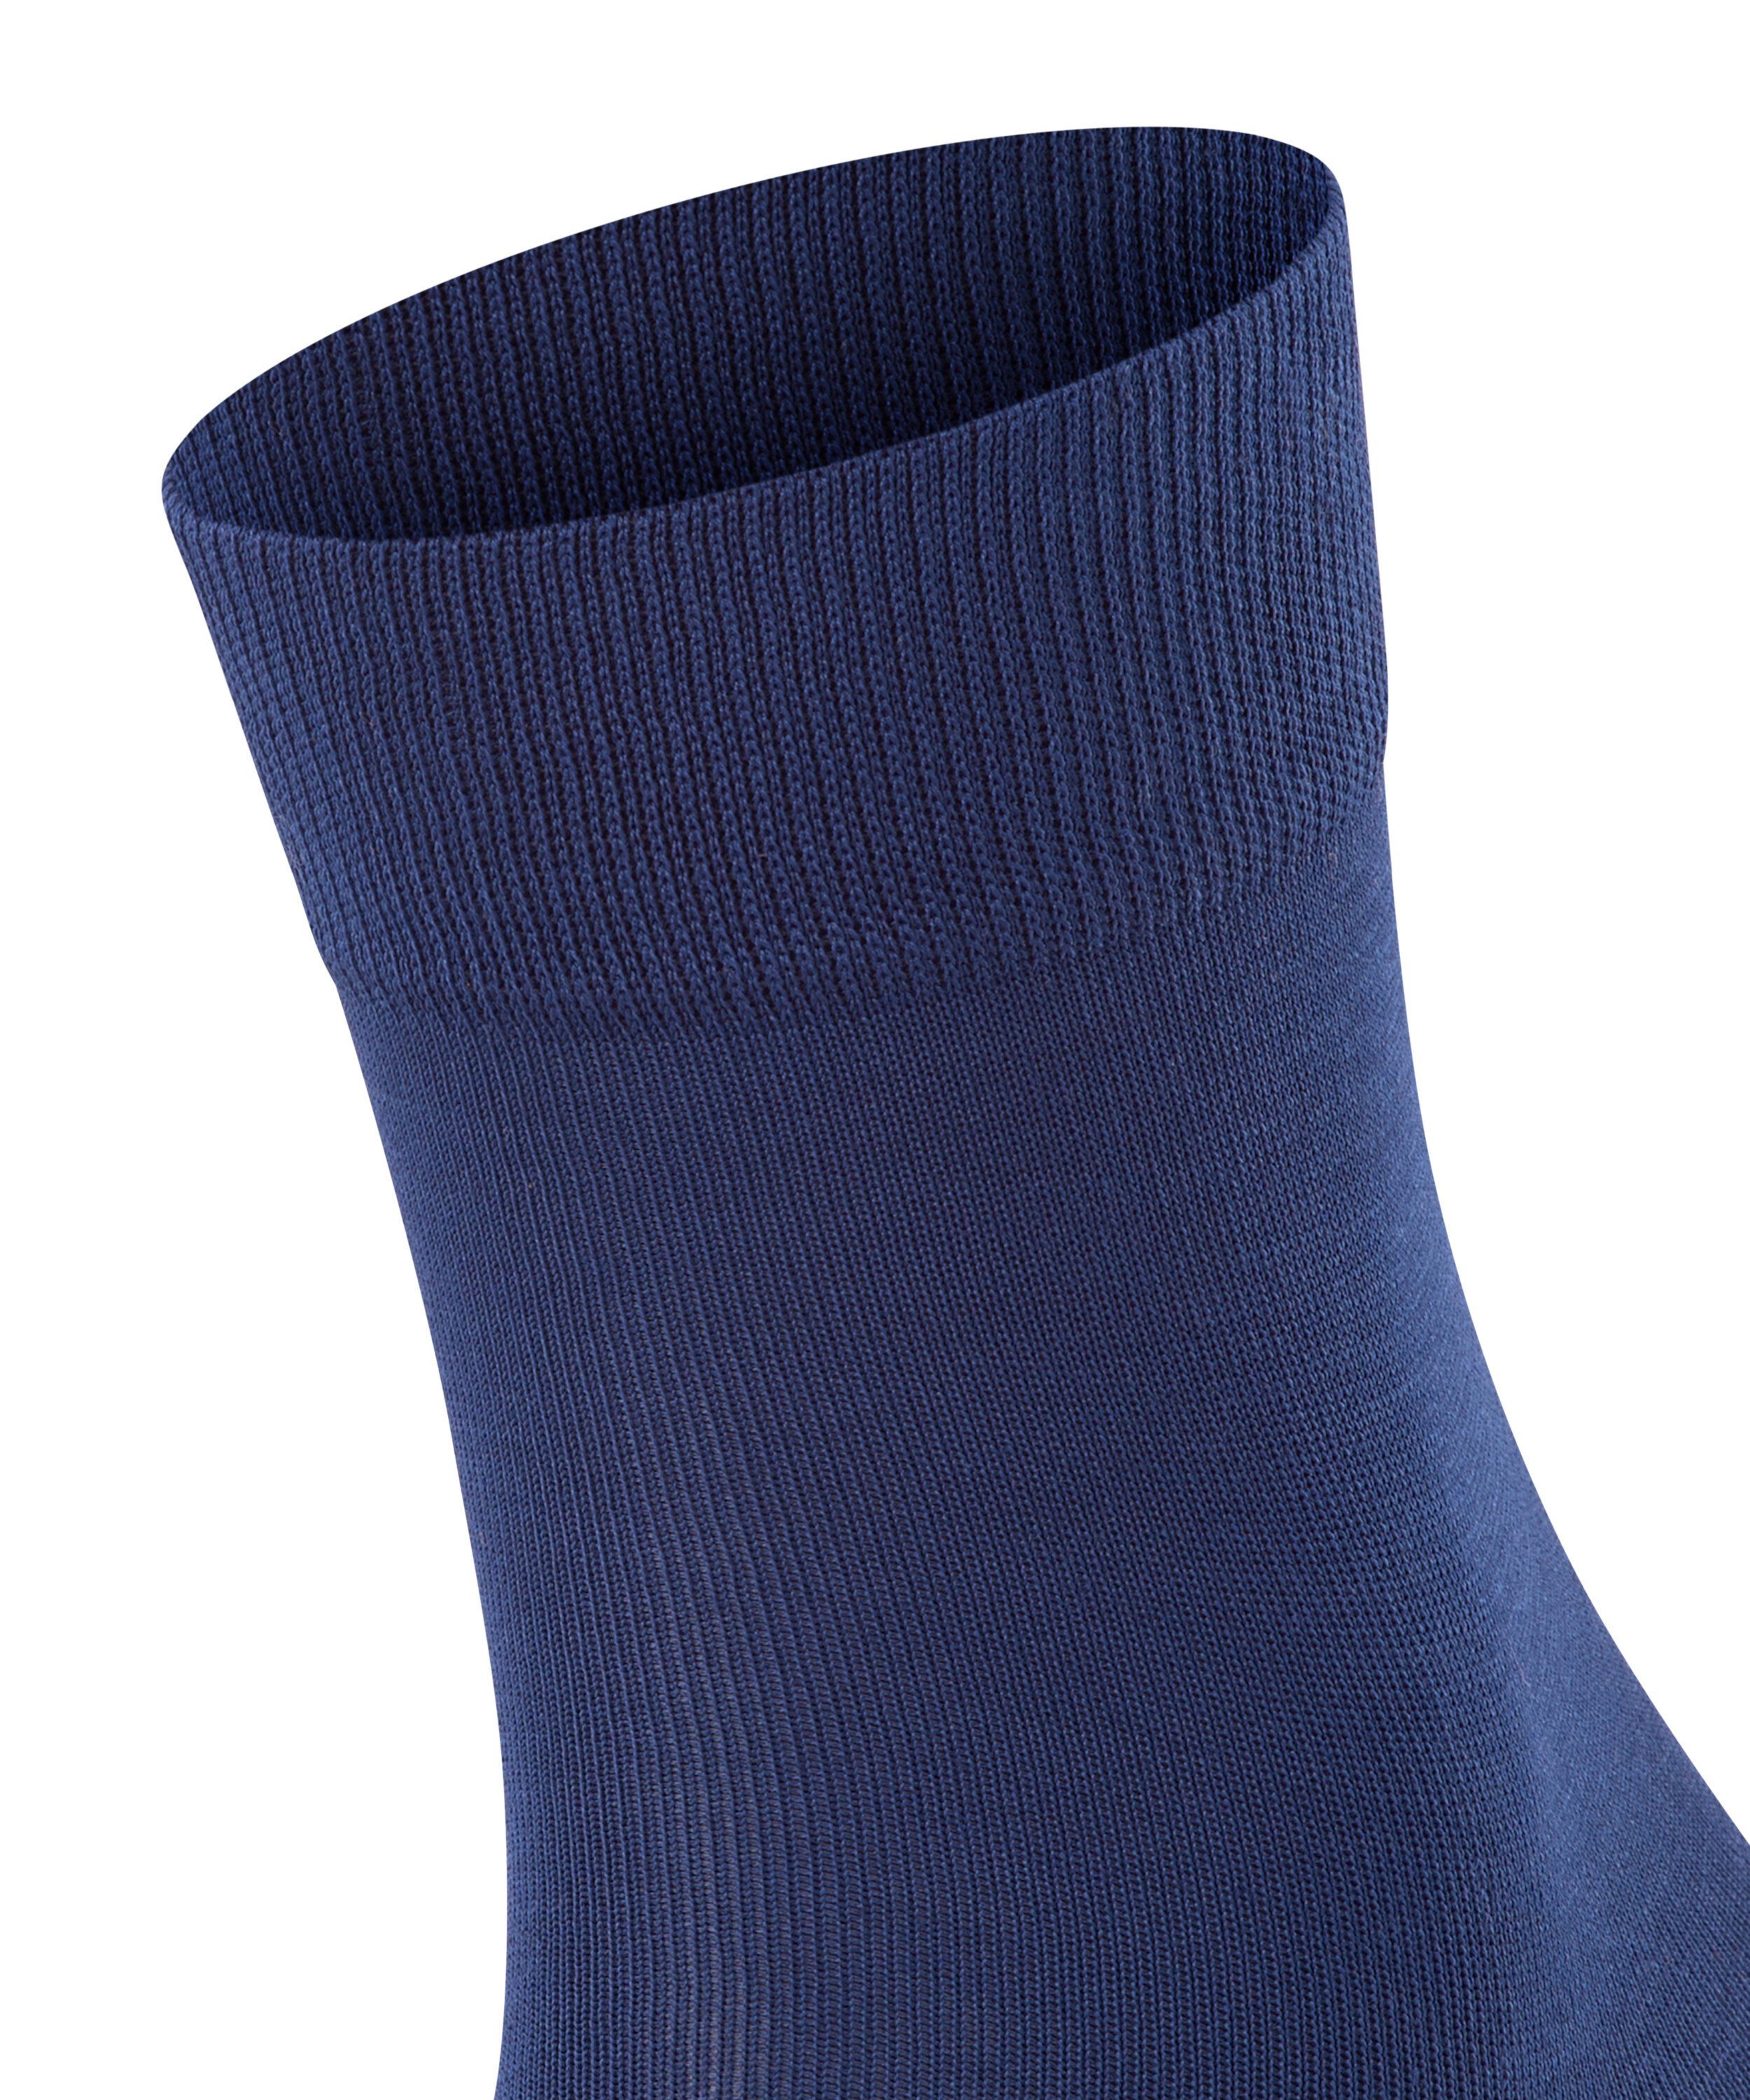 FALKE Socken Tiago (1-Paar) (6000) blue royal